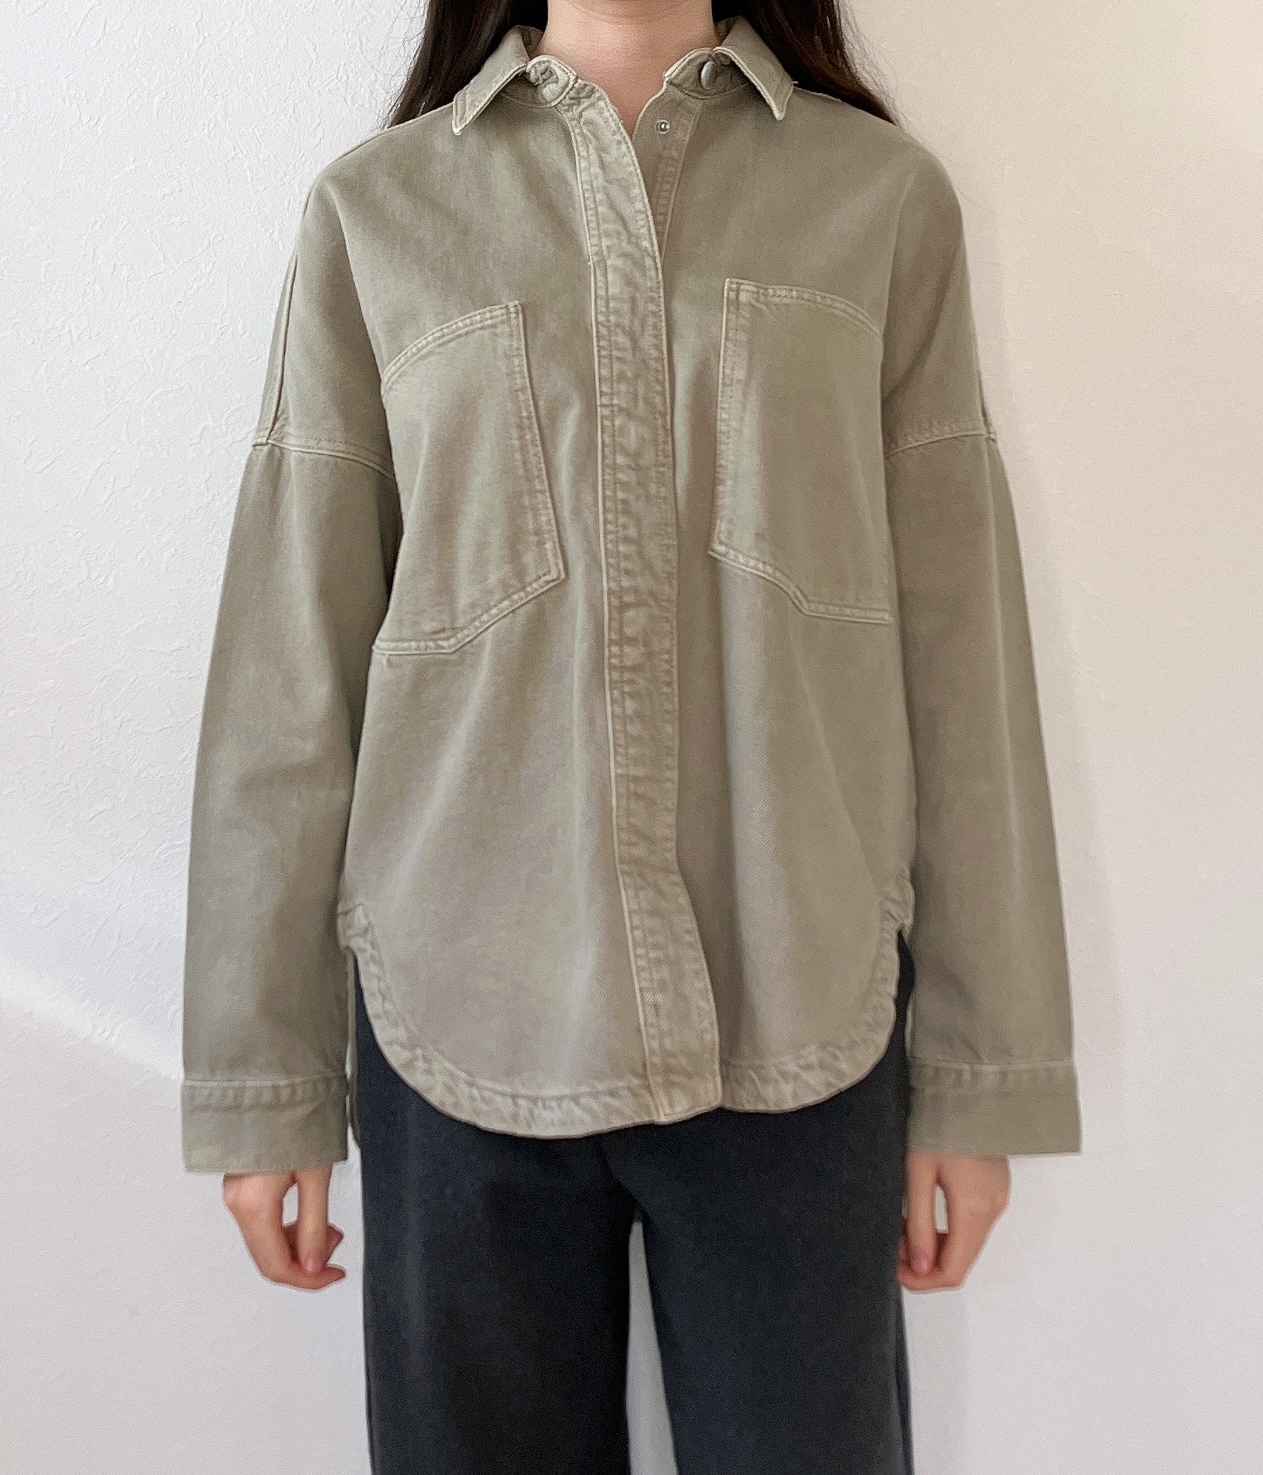 ZARA（ザラ）のおすすめトップス「ポケット付きオーバーサイズシャツジャケット」